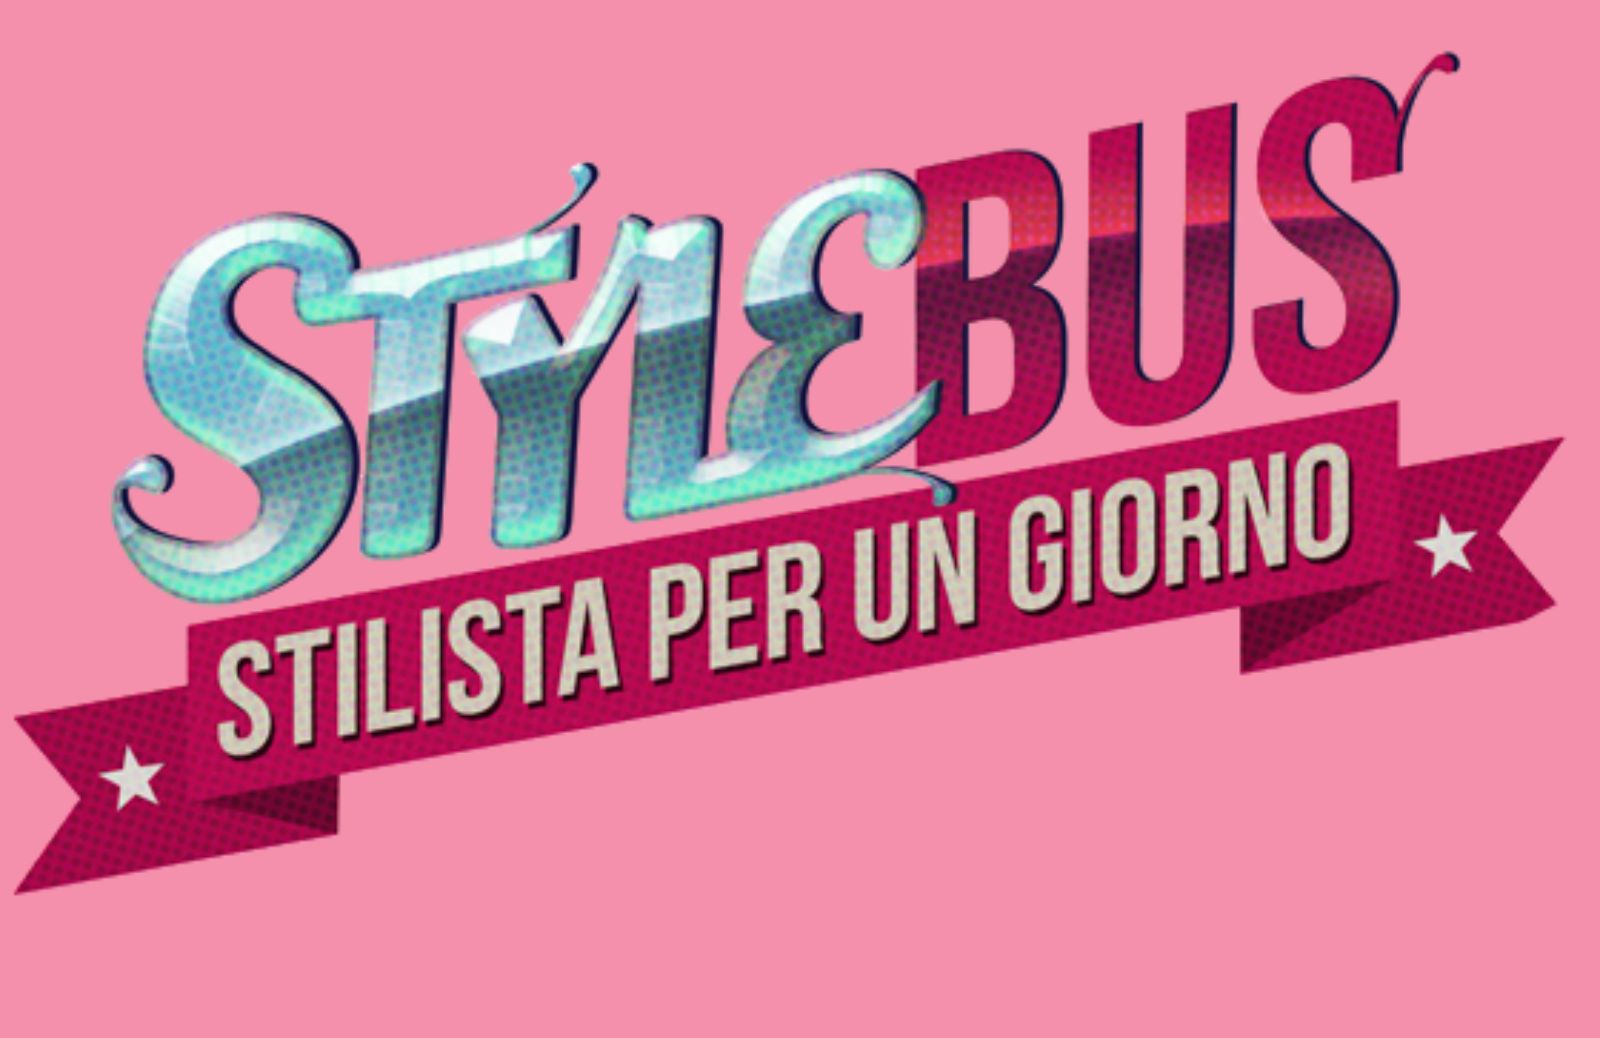 Arriva la nuova versione della app Style Bus – Stilista per un giorno